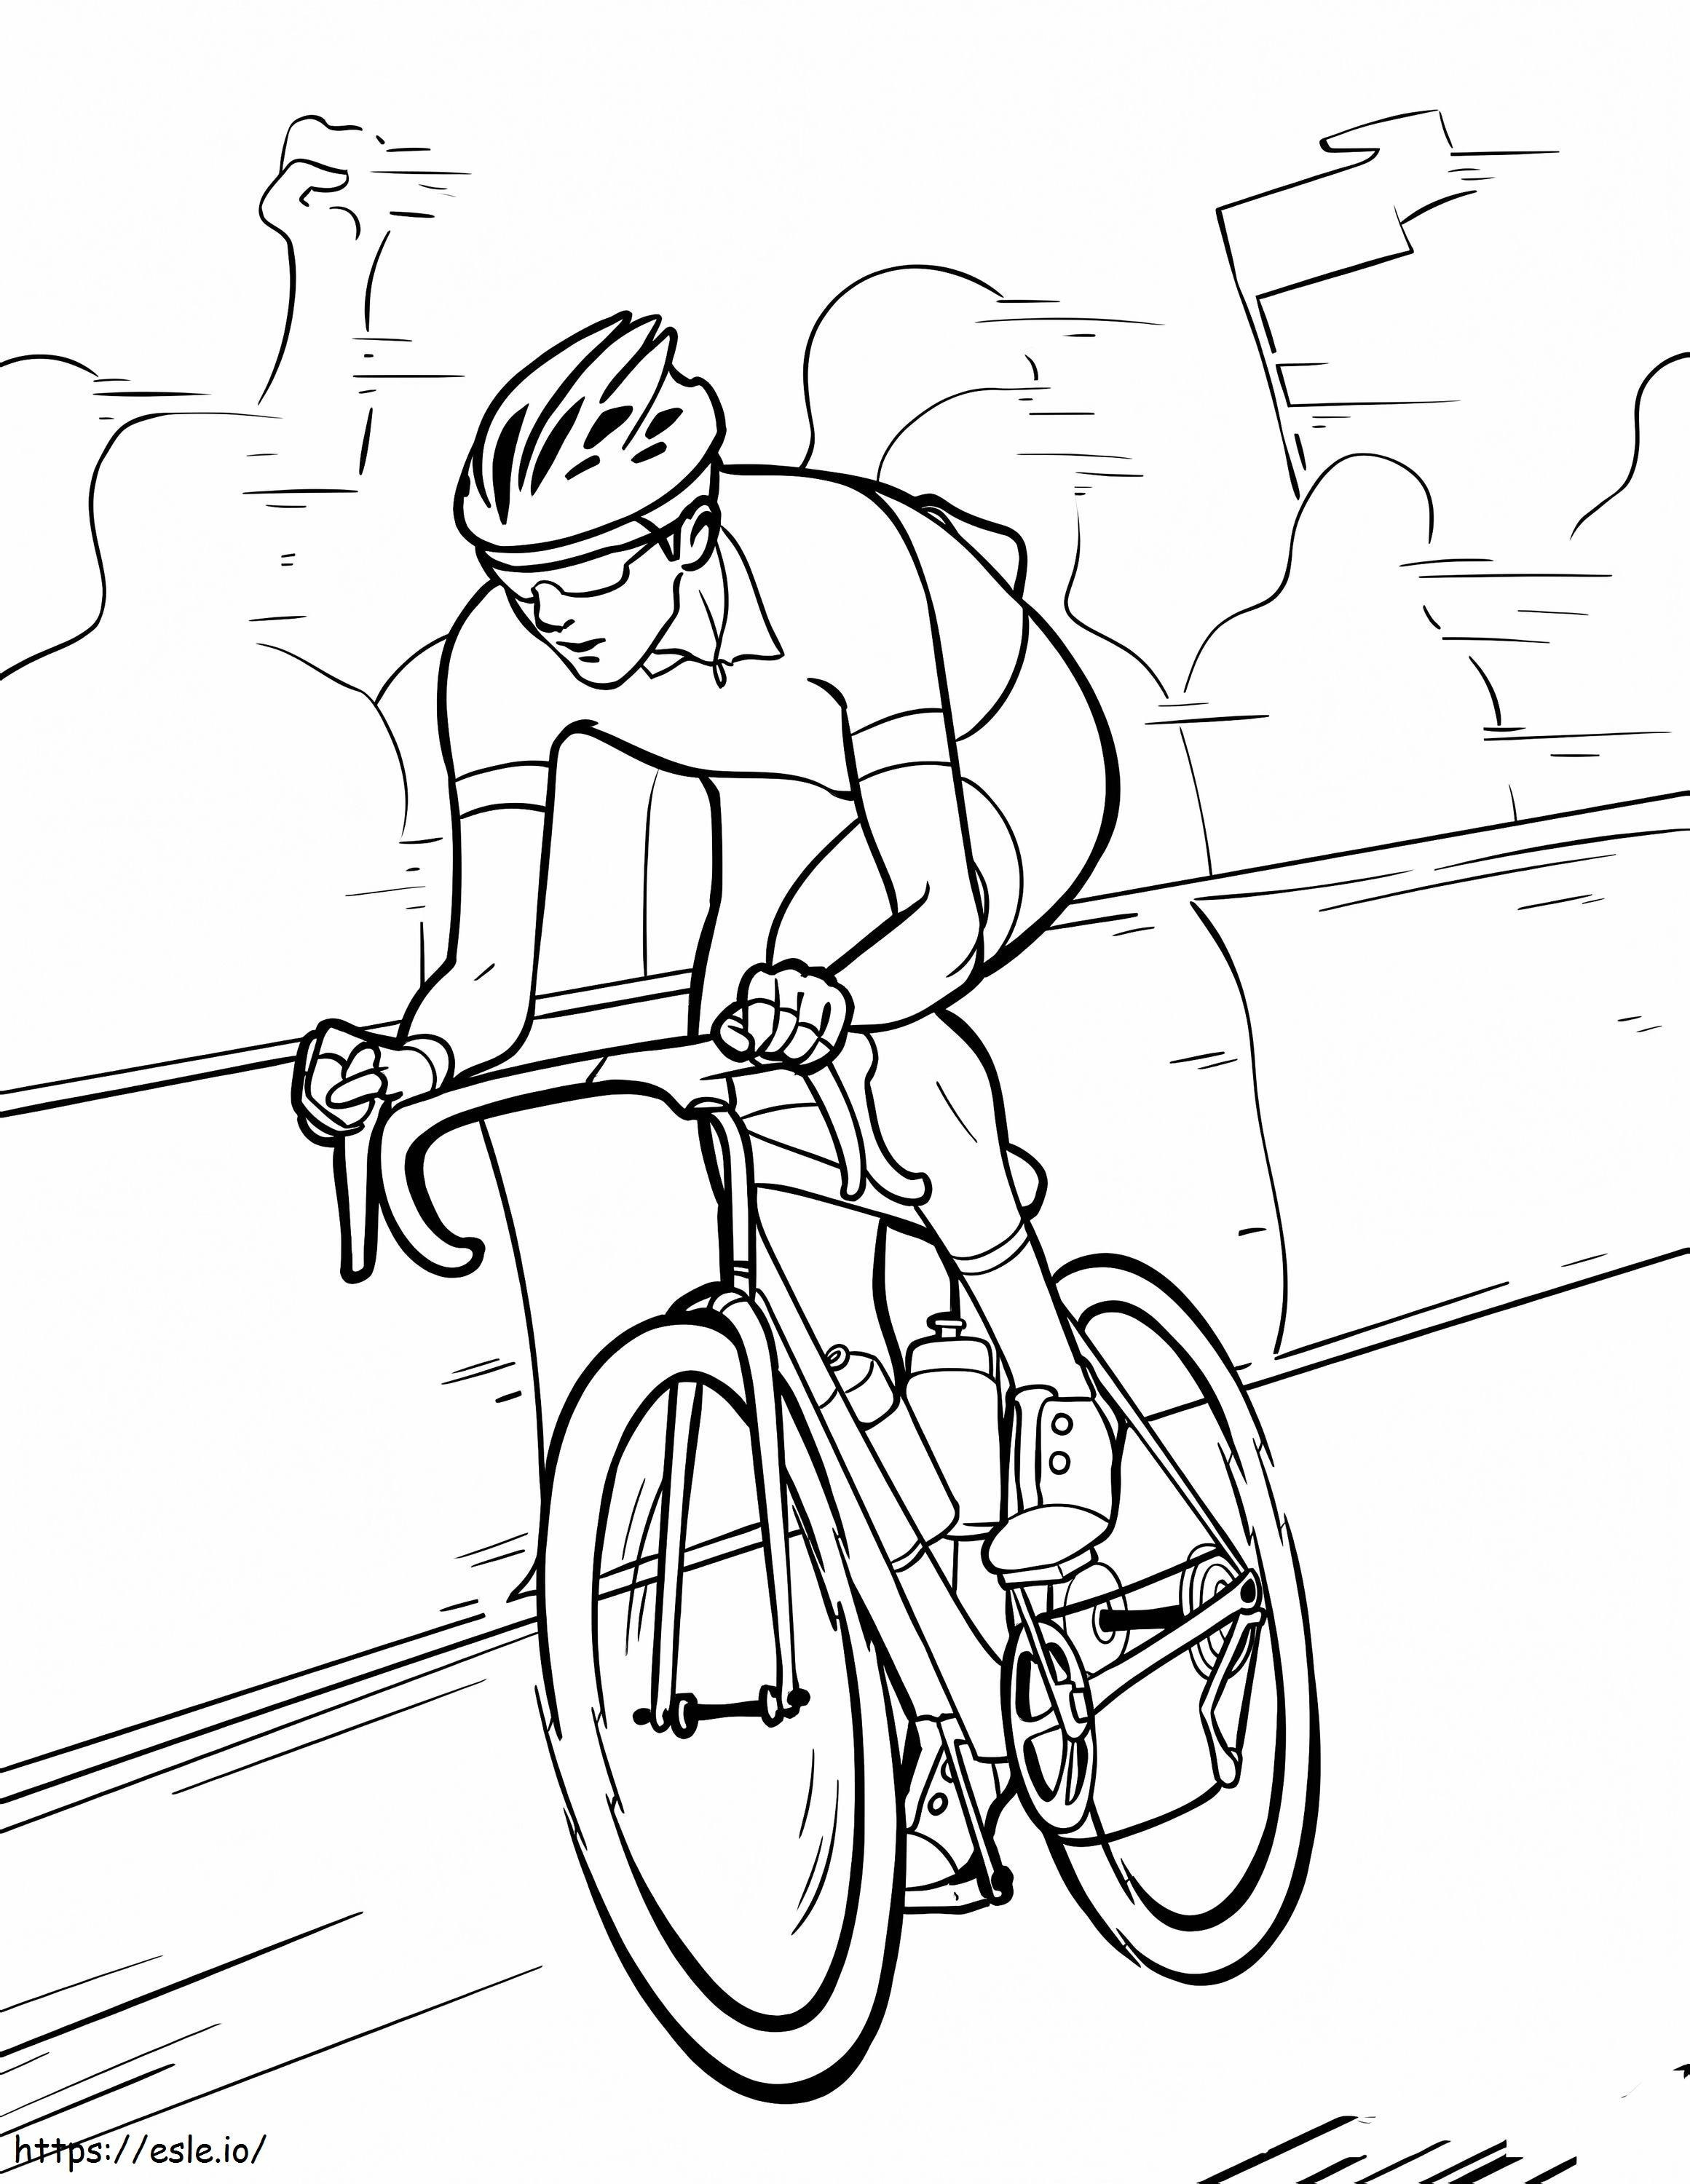 Coloriage Athlète cycliste à imprimer dessin